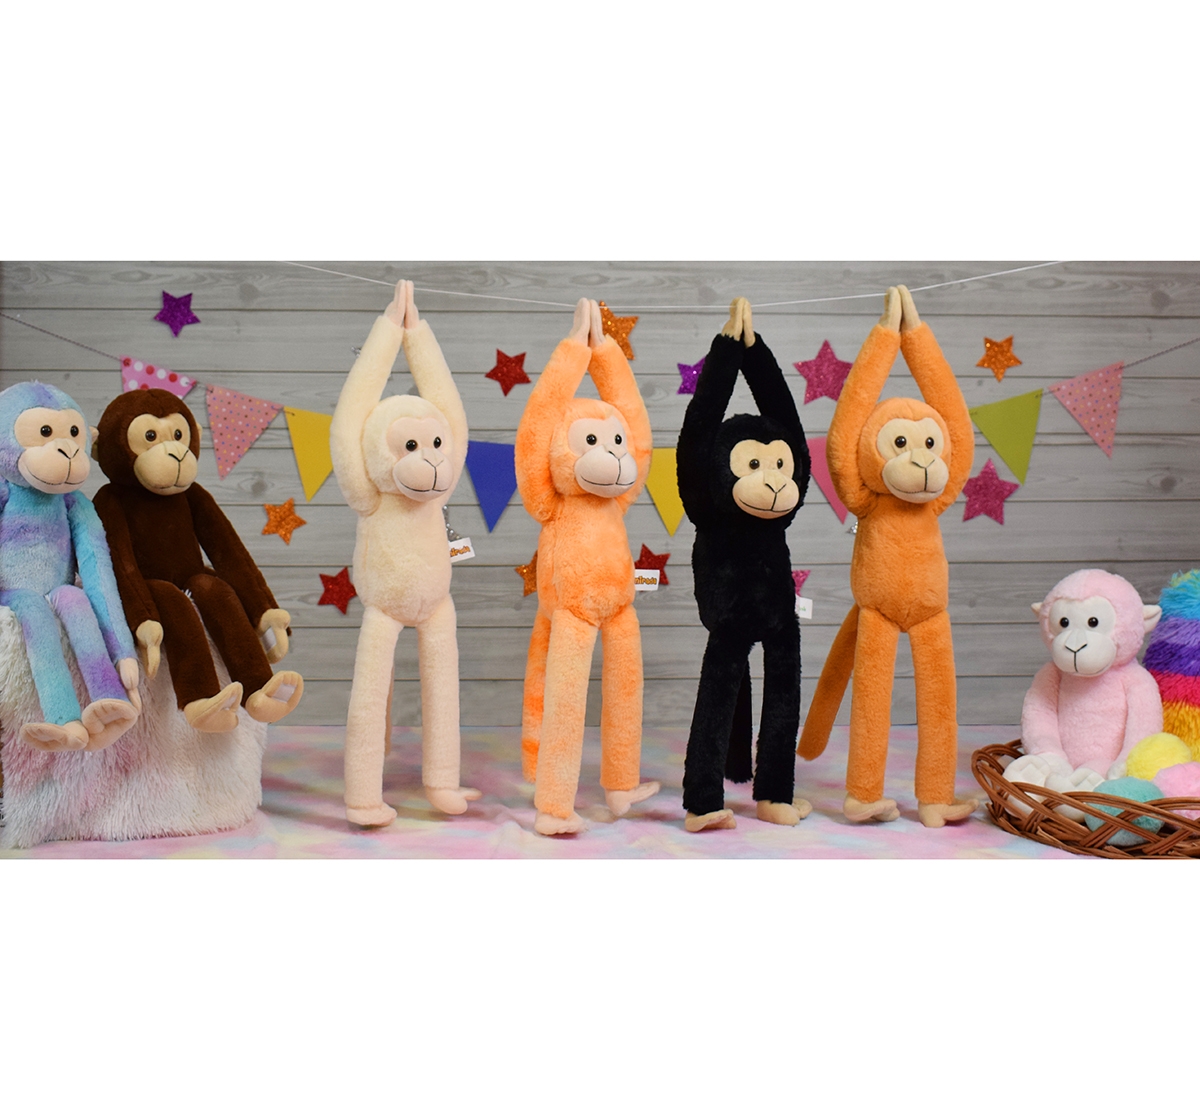 Mirada | Mirada 52cm hanging monkey soft toy Multicolor 3Y+ 6